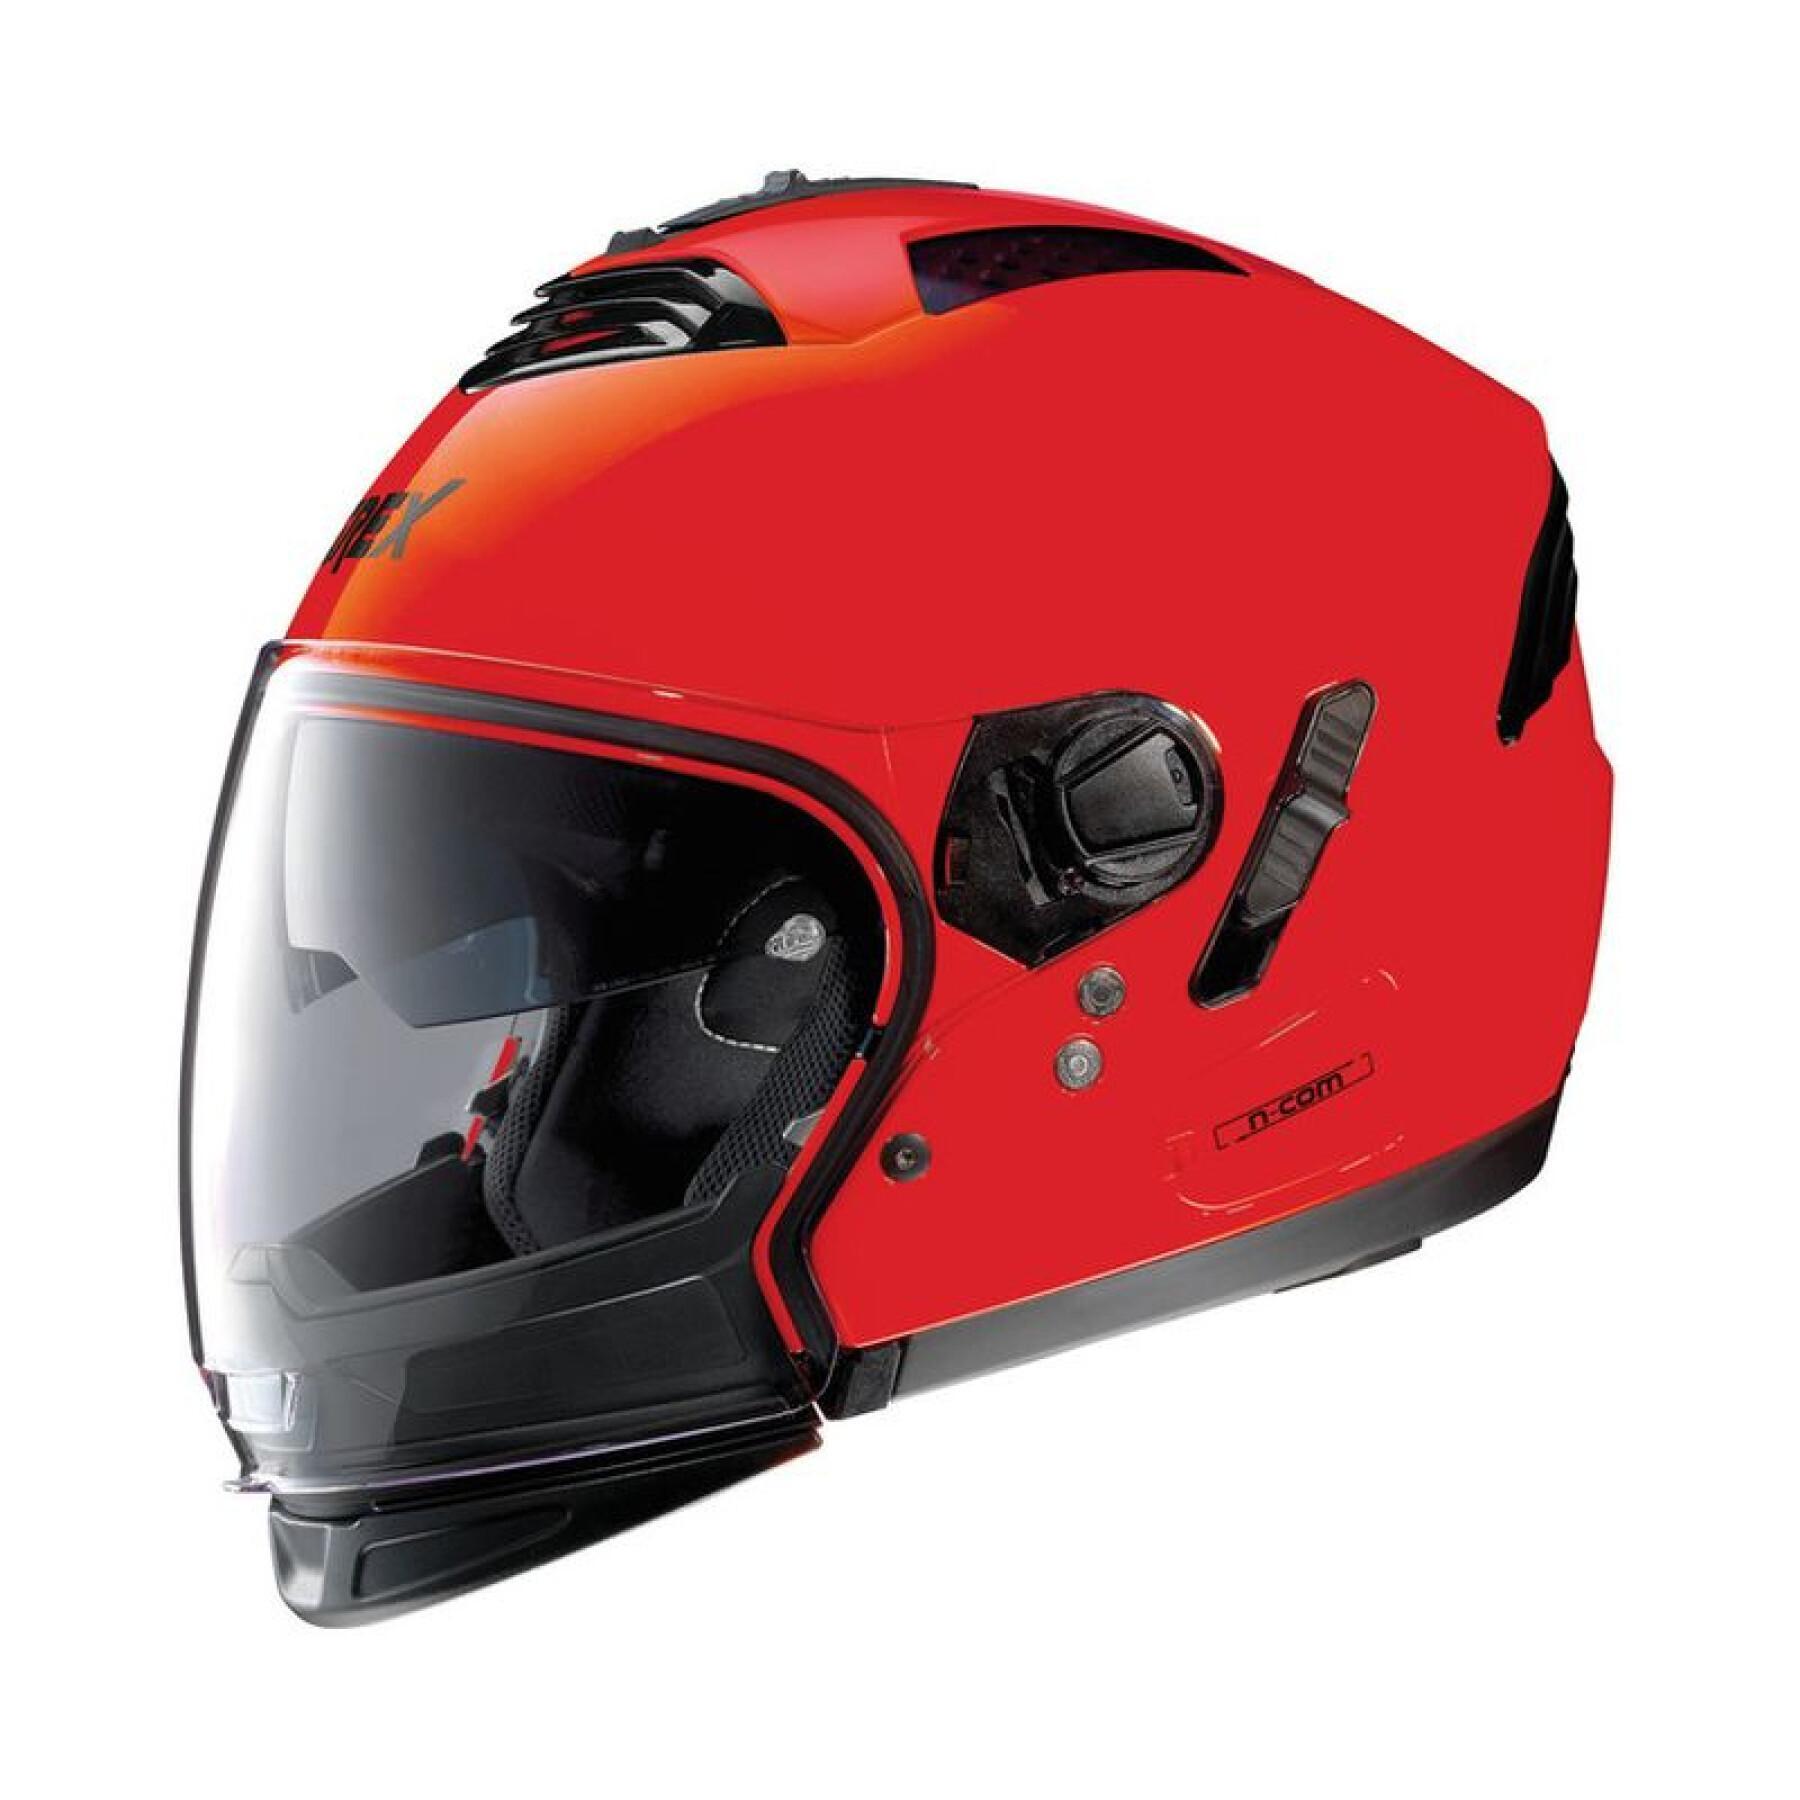 Helhjälm för motorcykel Grex G4.2 Pro Kinetic N-Com Corsa 29